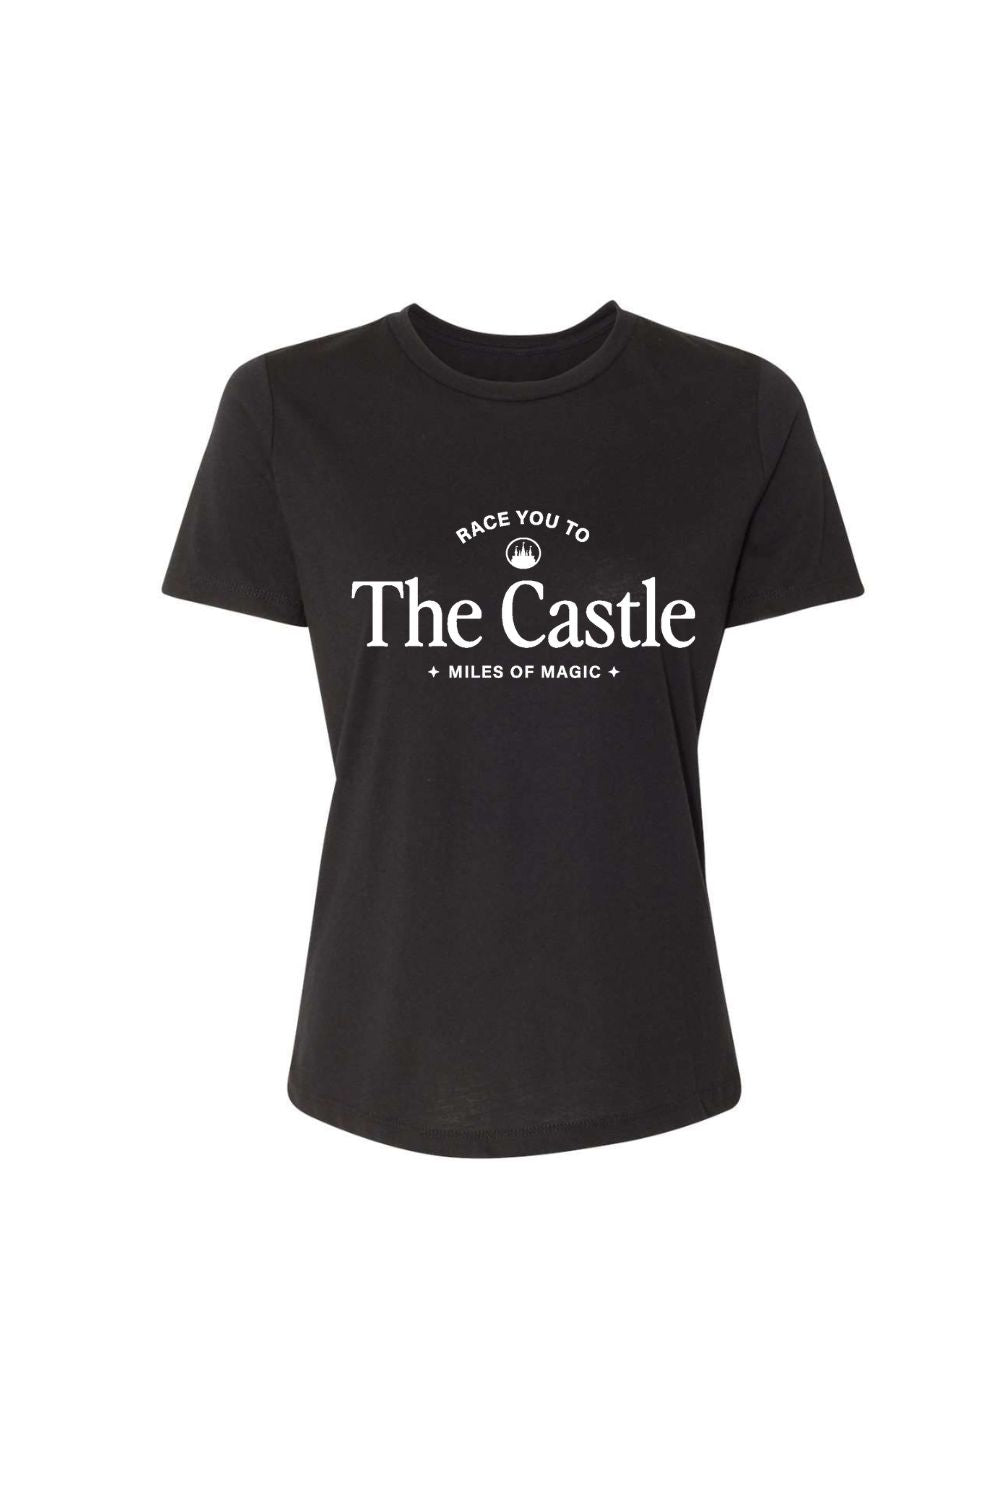 The Castle Women's T-shirt